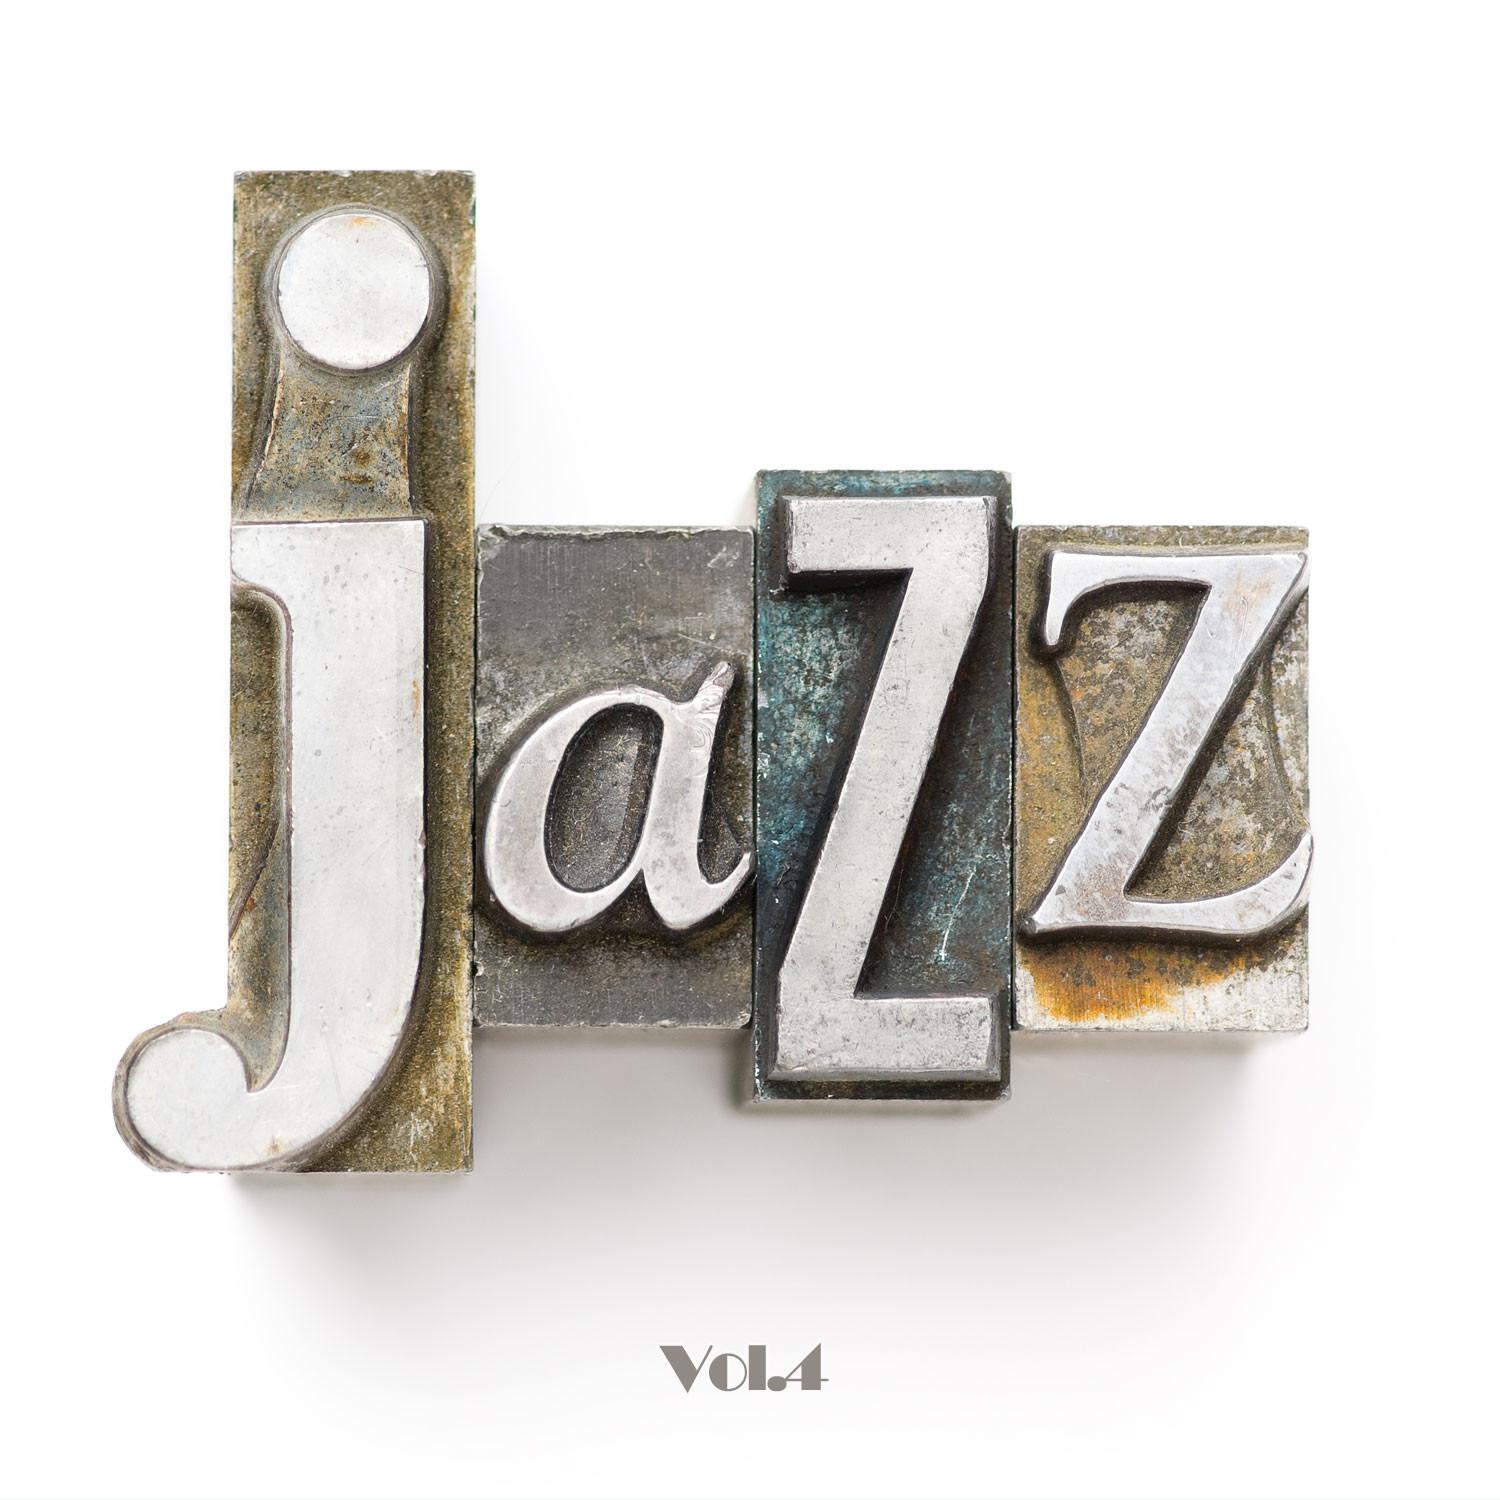 Jazz, Vol. 4